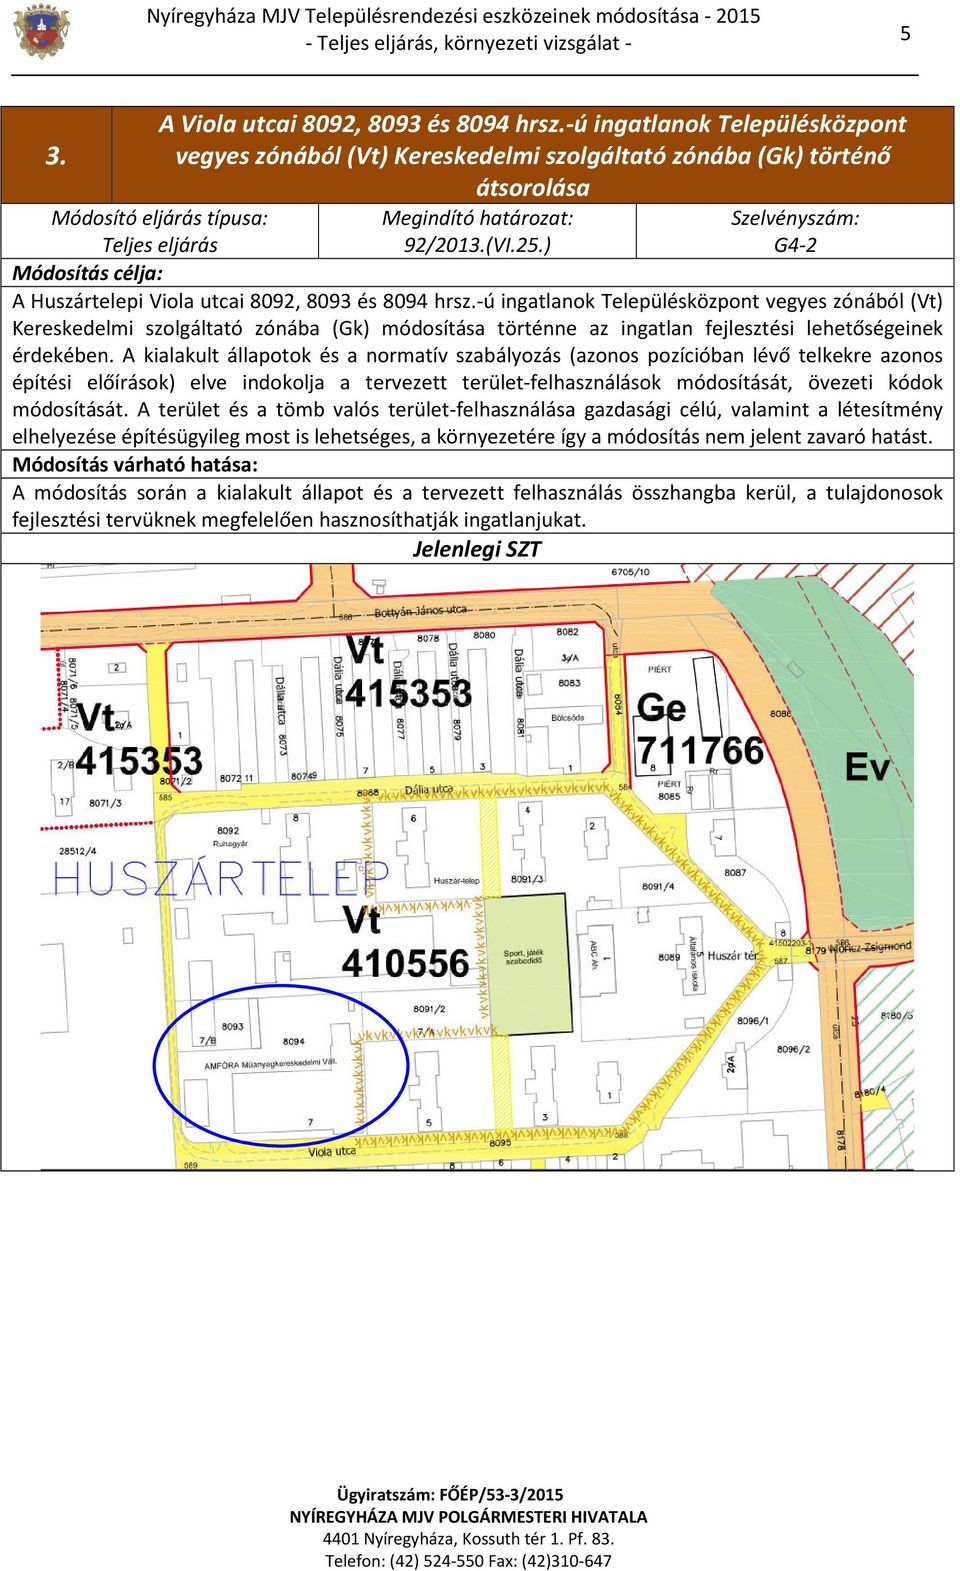 ) G4-2 Módosítás célja: A Huszártelepi Viola utcai 8092, 8093 és 8094 hrsz.